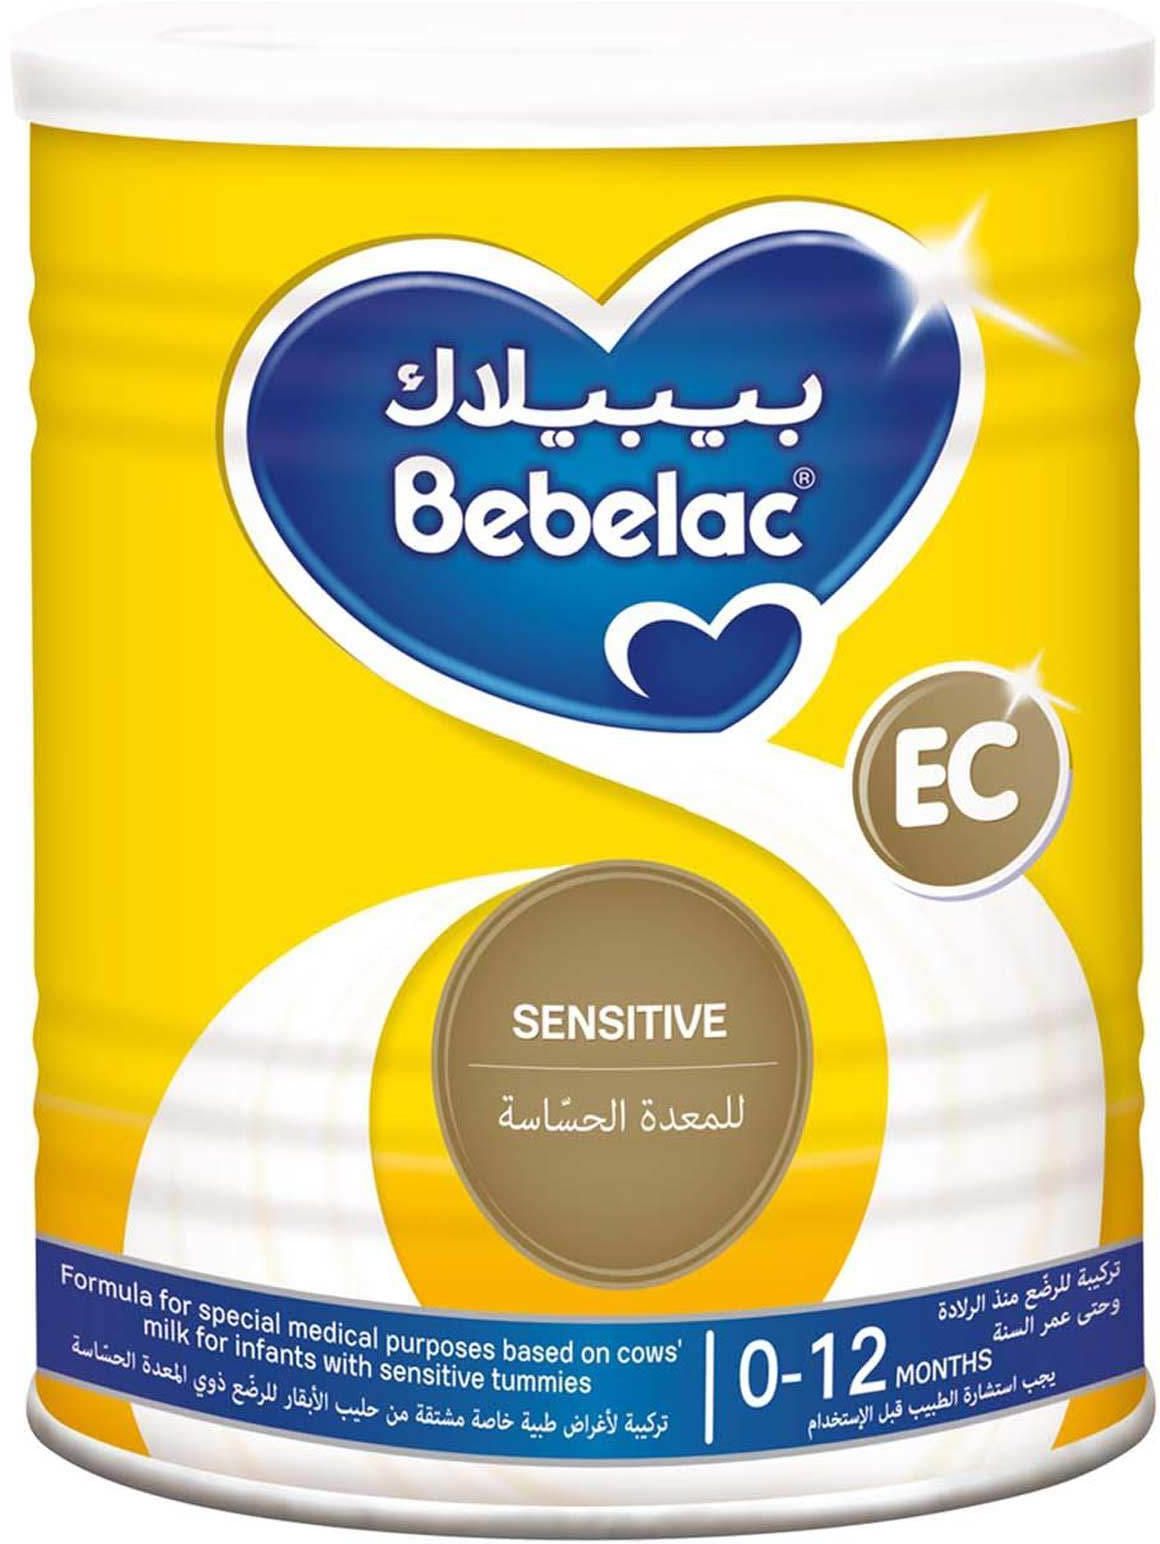 Bebelac Extra Care Sensitive Infant Milk Formula 400g